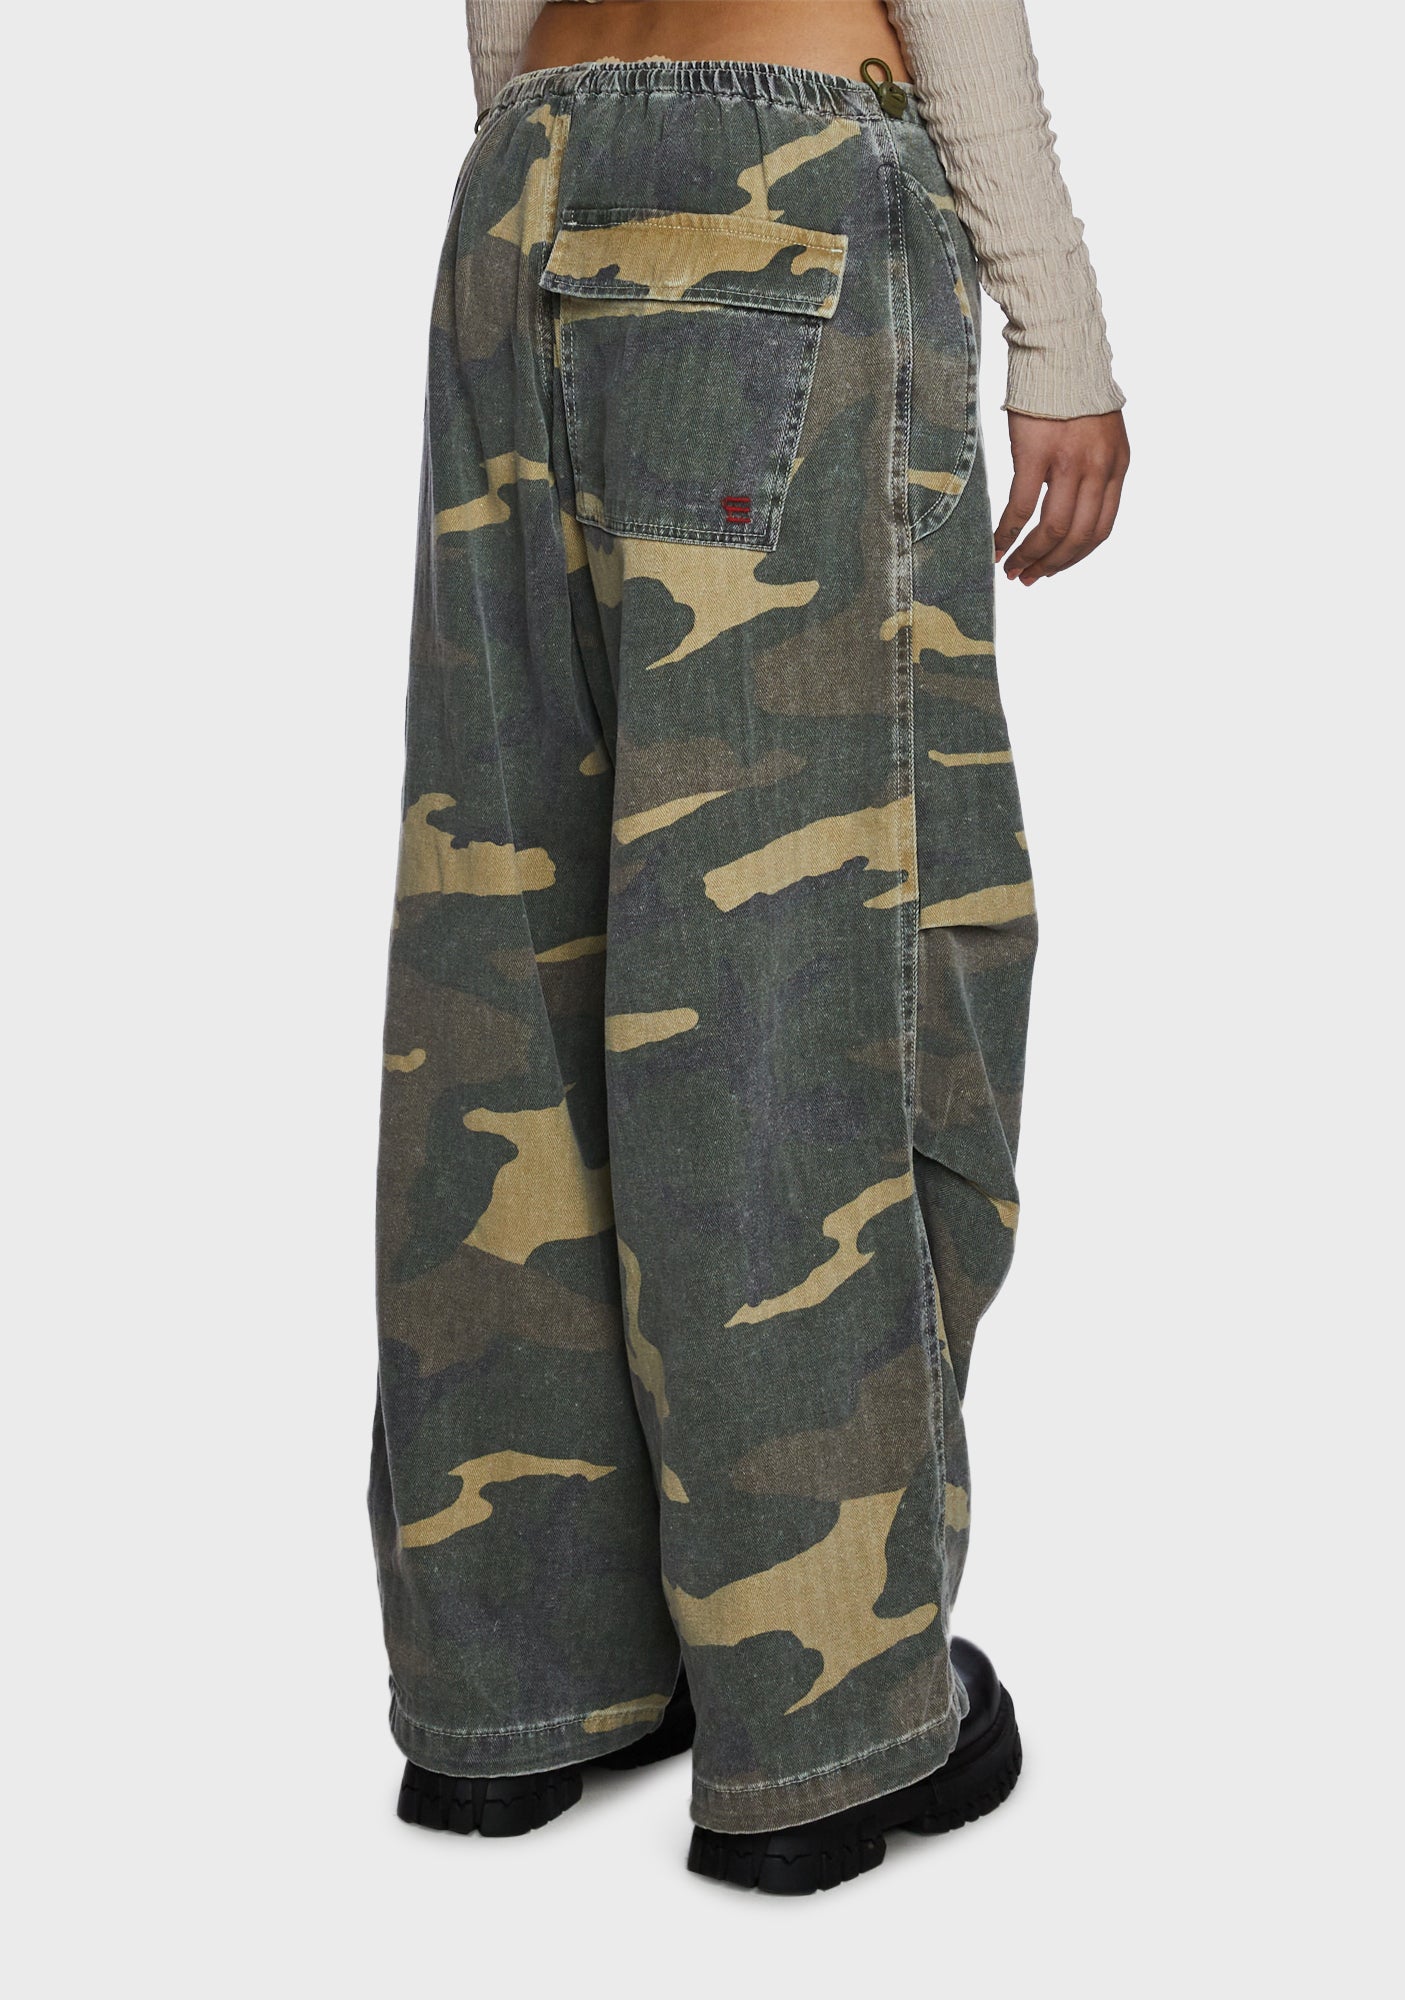 Best Kept Secret Baggy Camo Pants  Camouflage  Fashion Nova Pants   Fashion Nova